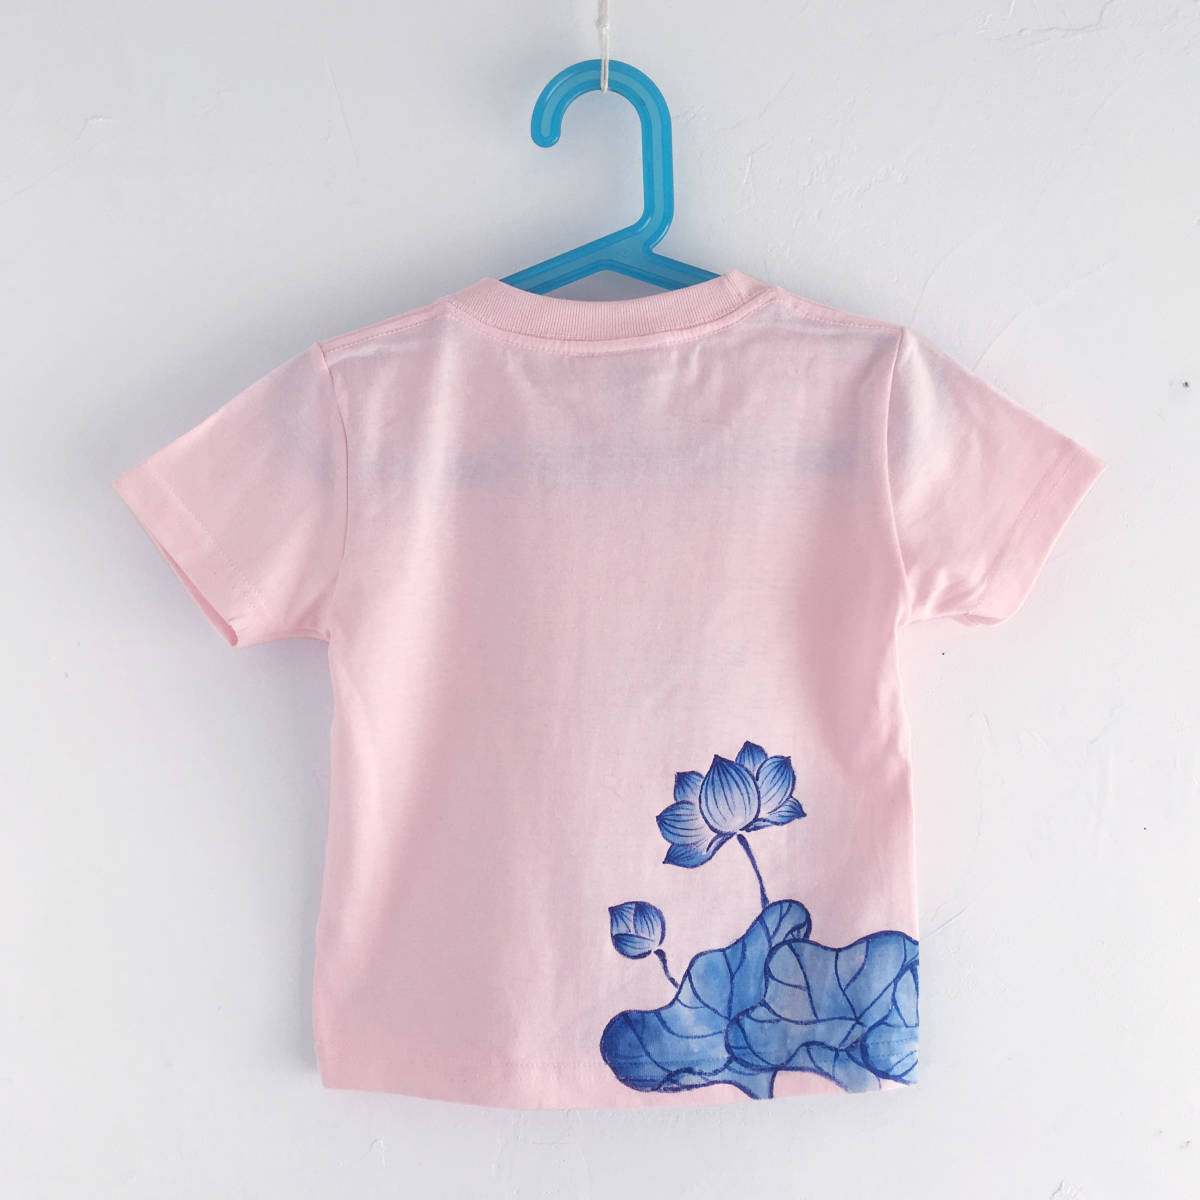 キッズ Tシャツ 100サイズ ピンク 蓮柄Tシャツ 手描きで描いた蓮の花柄Tシャツ 半袖 和柄 和風 レトロ ハンドメイド_画像2